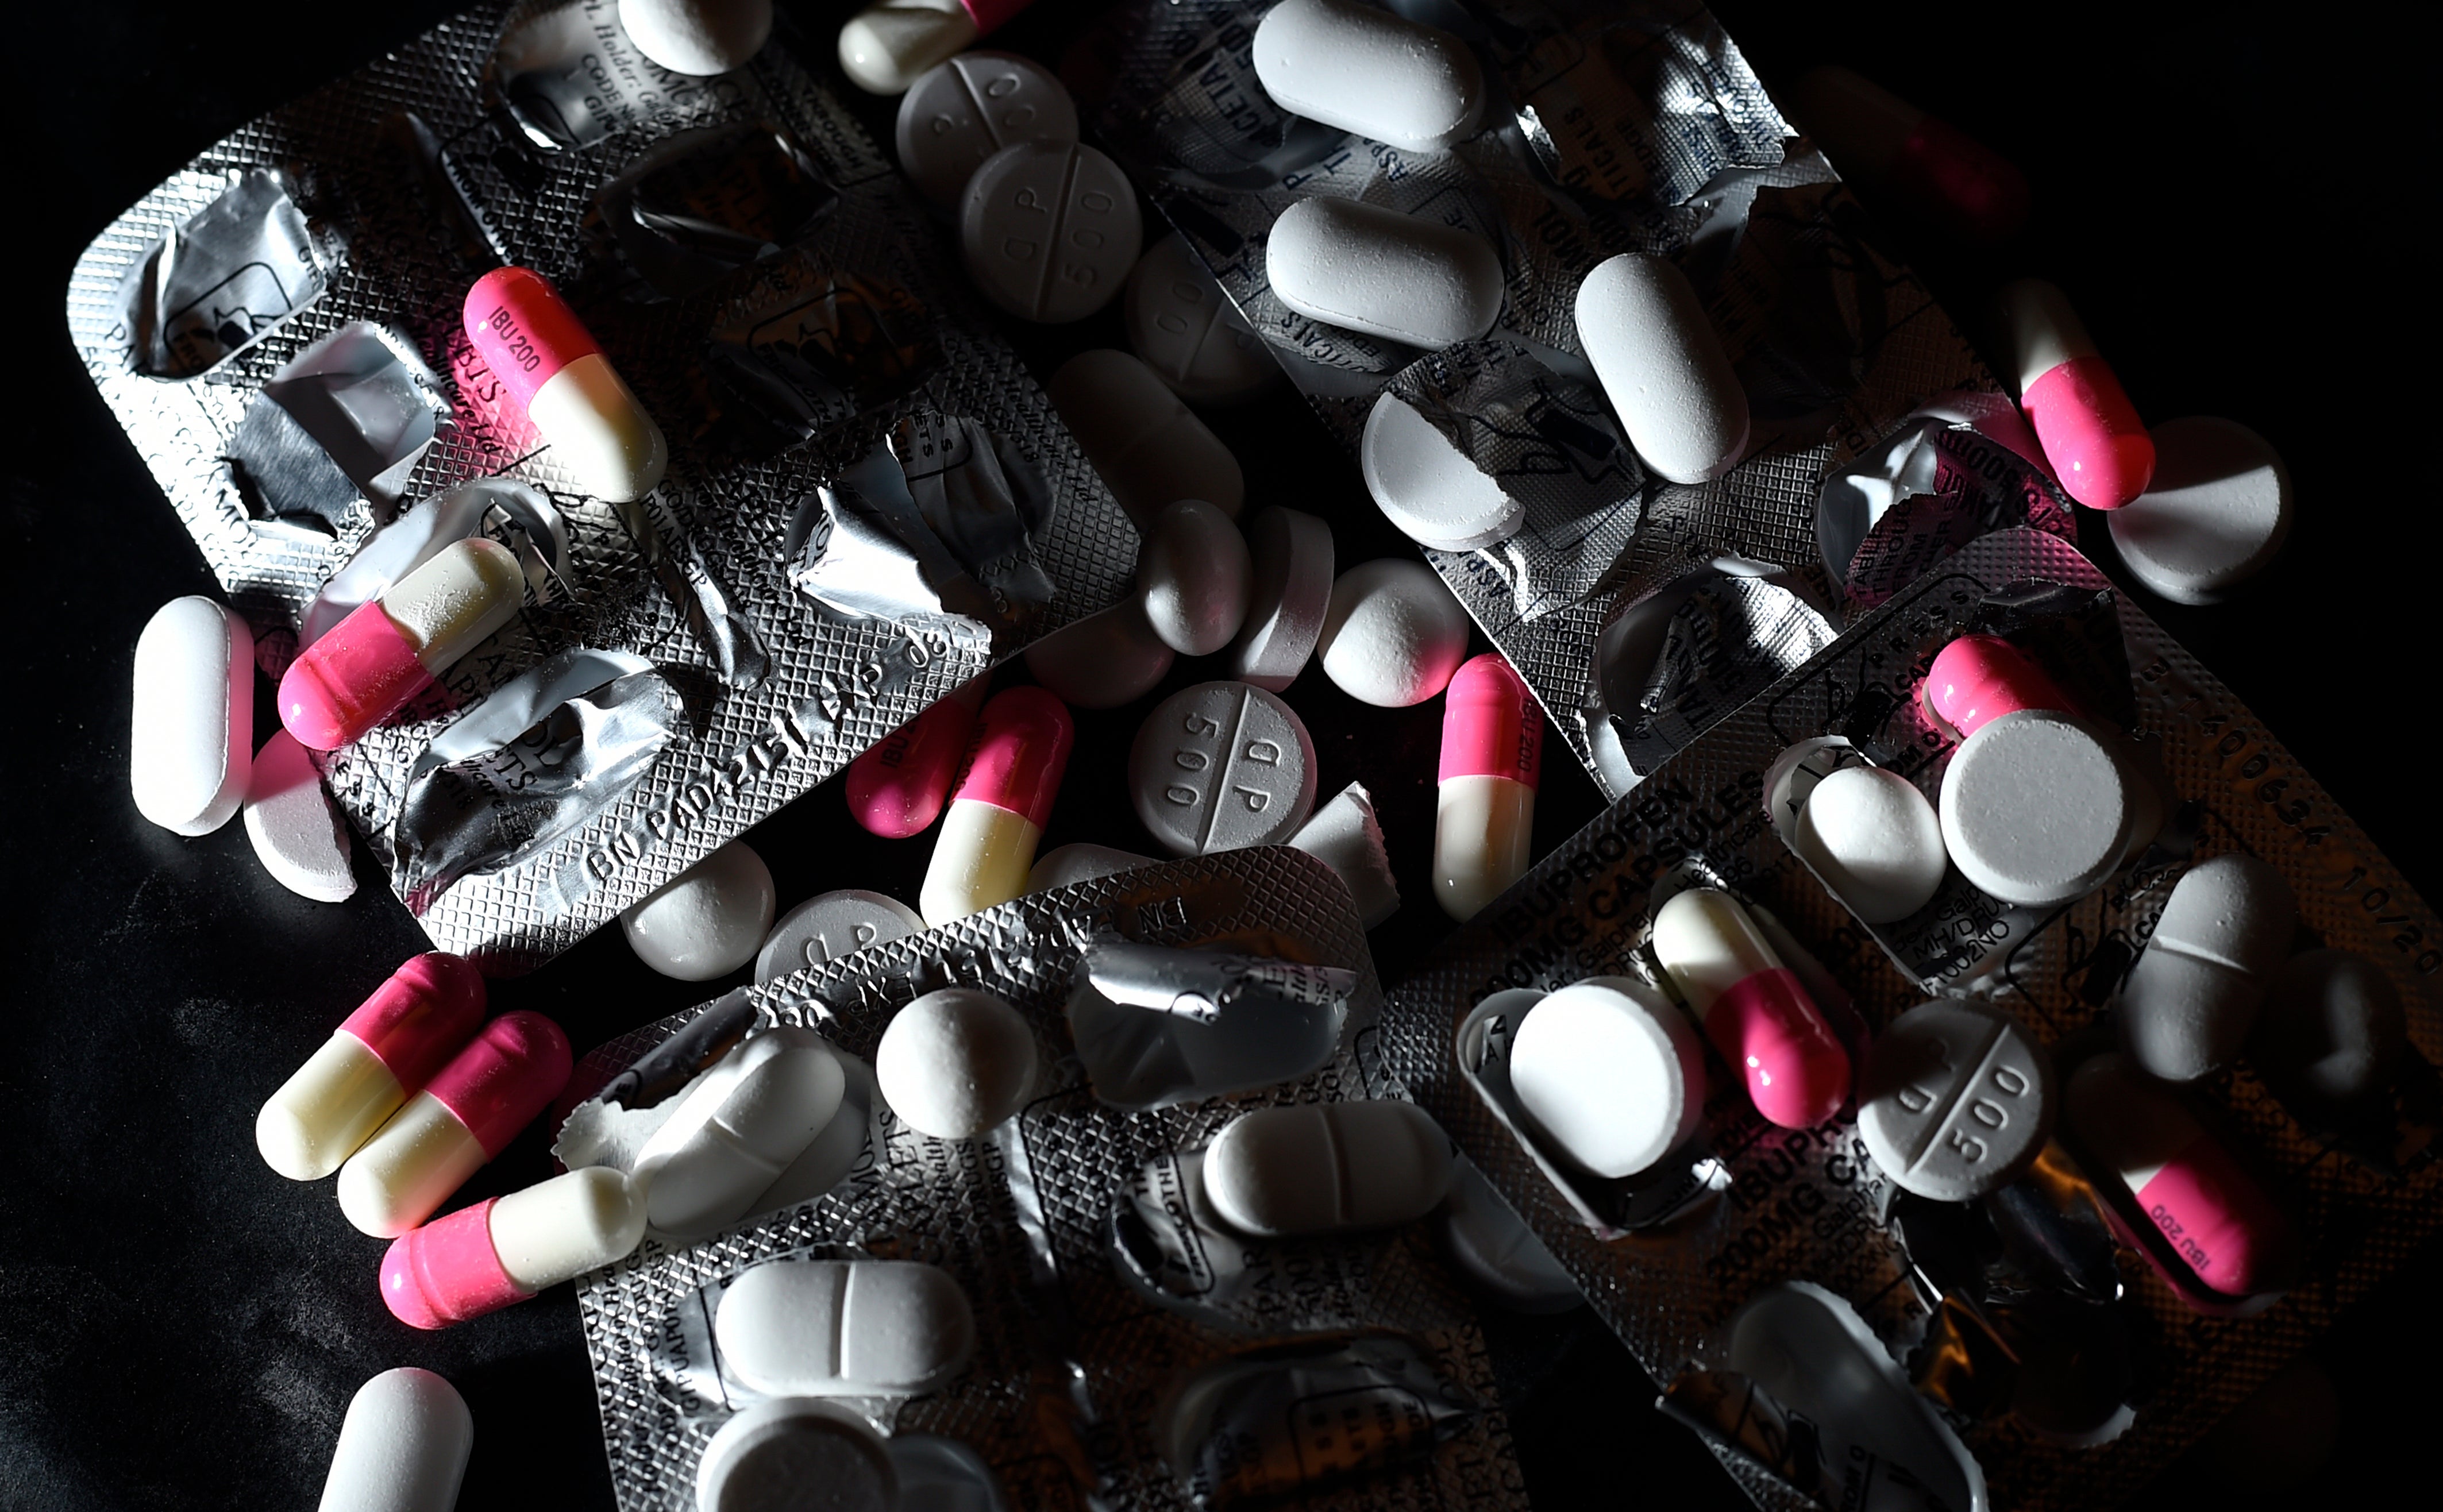 Las existencias de paracetamol e ibuprofeno son bajas, según datos de la ONS